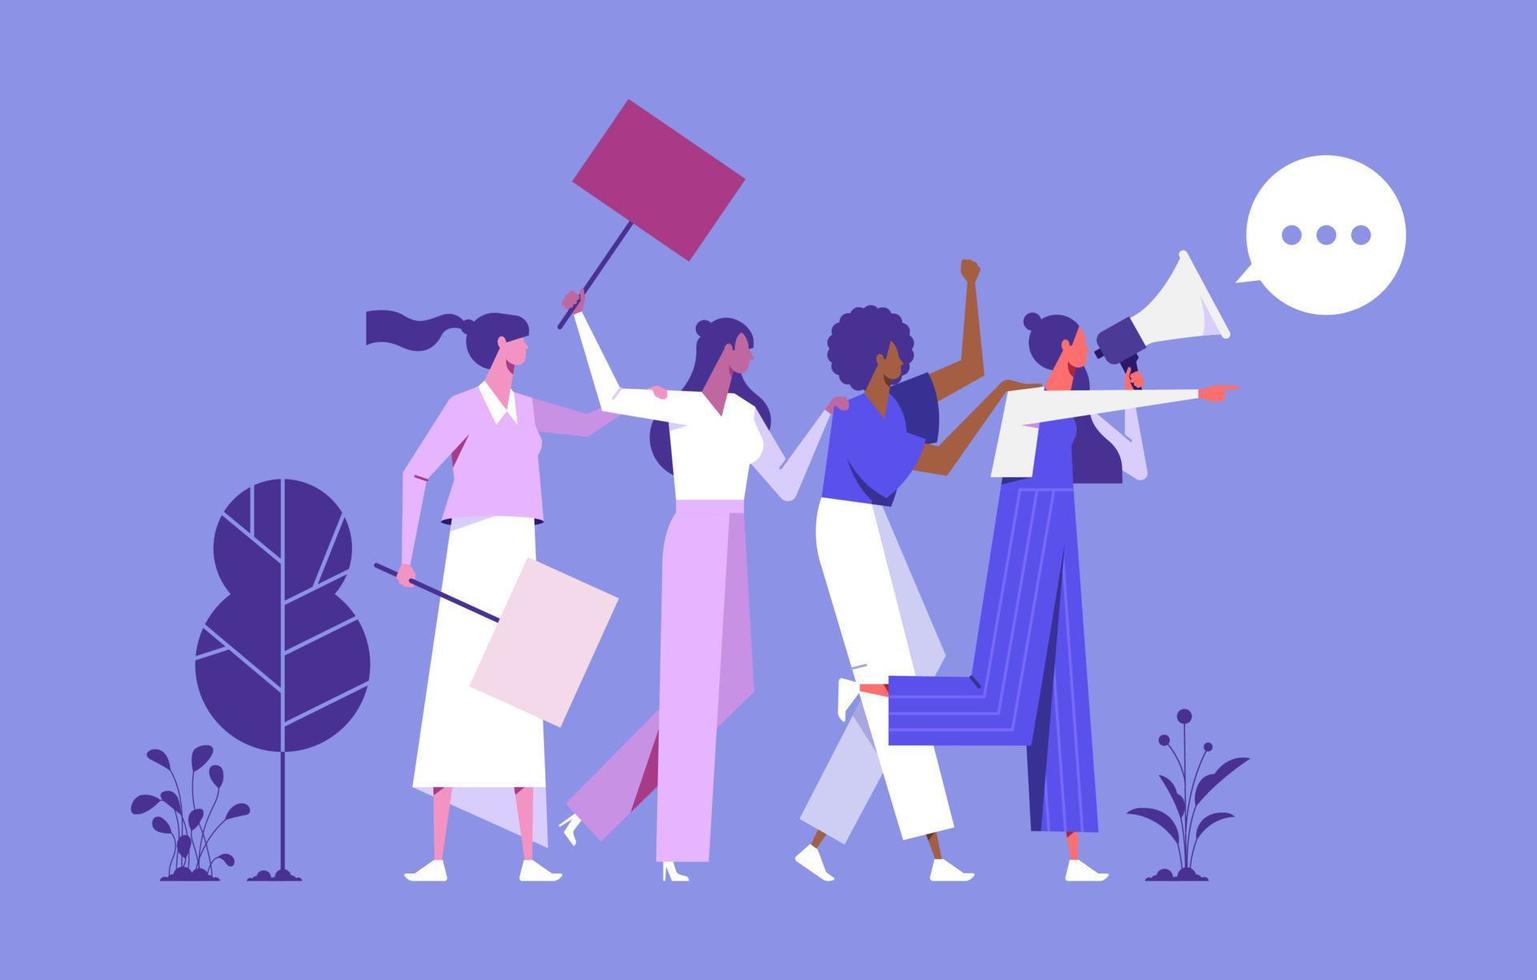 ilustração de mulheres andando com alto-falante e lutando por seus direitos, igualdade, contra violência, discriminação no local de trabalho, pessoas segurando cartazes ou faixas vetor